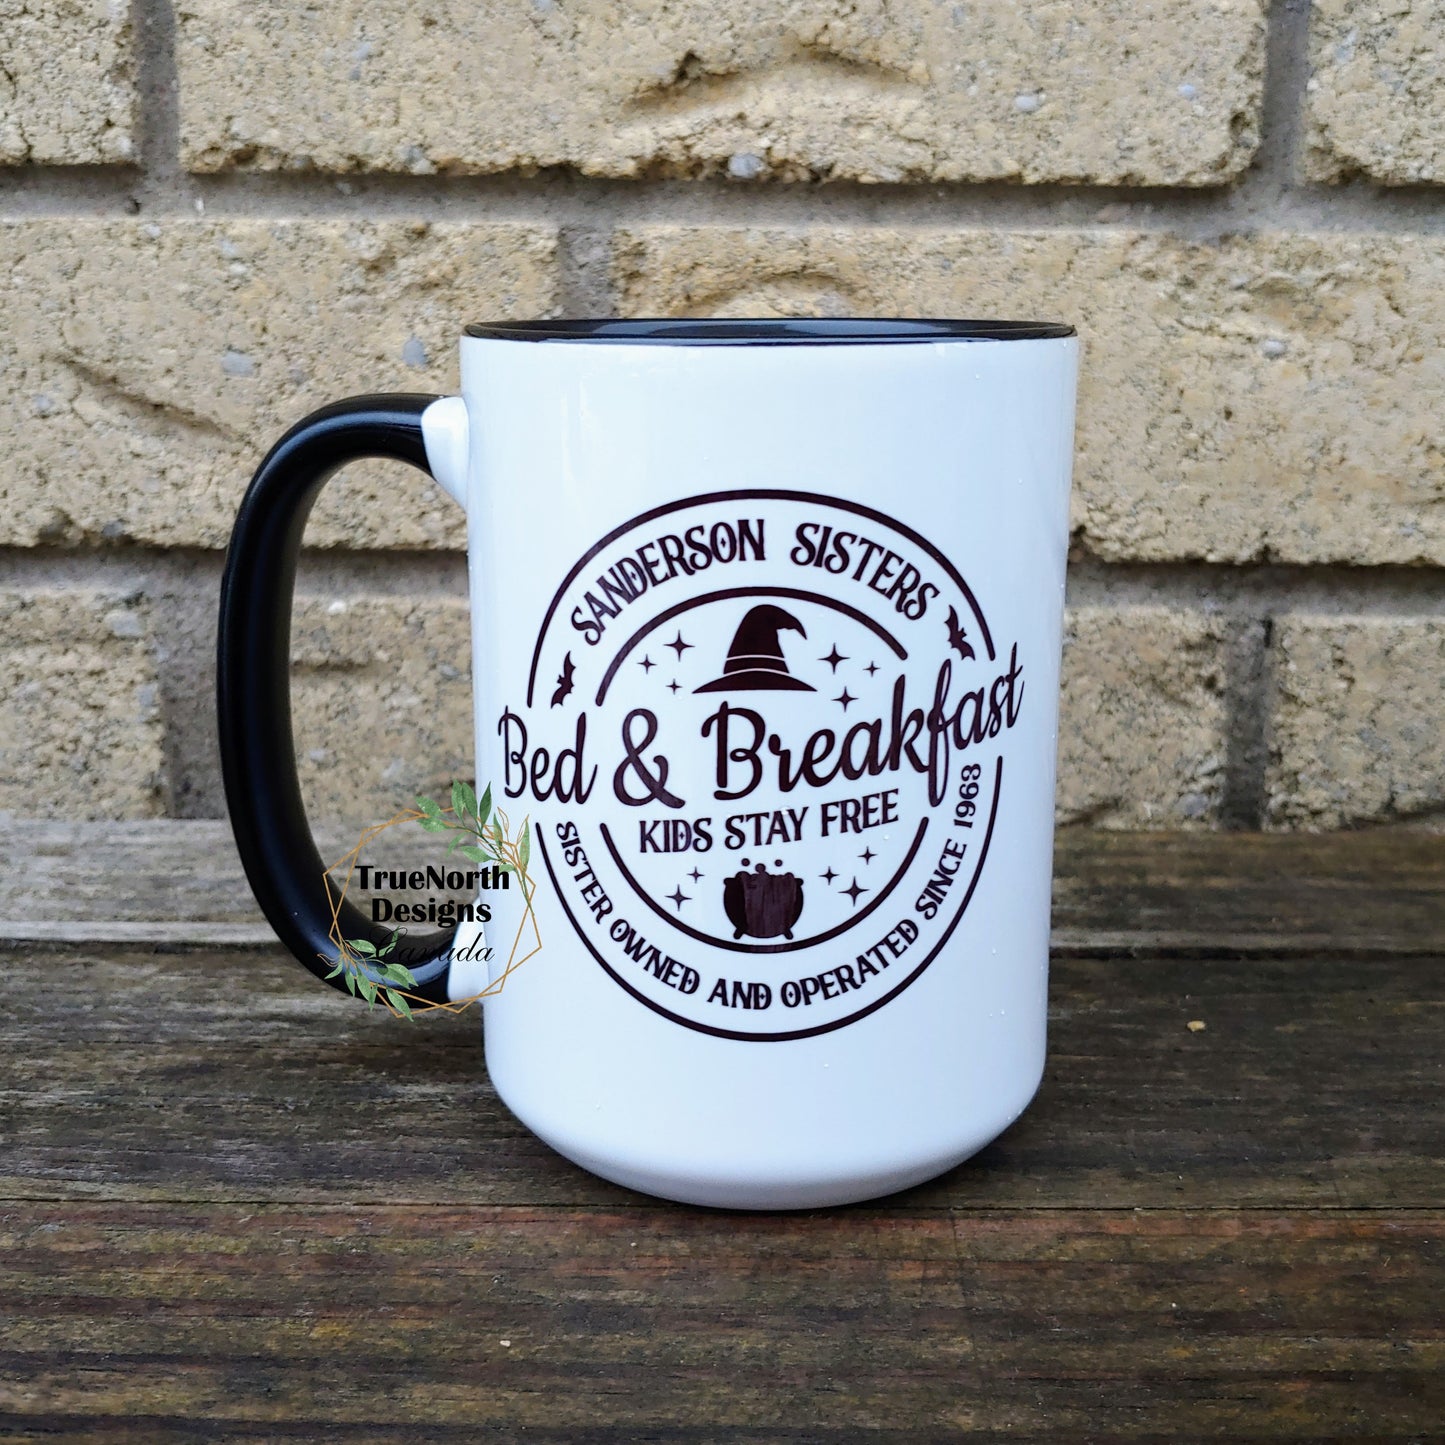 Sanderson Sisters Bed and Breakfast mug